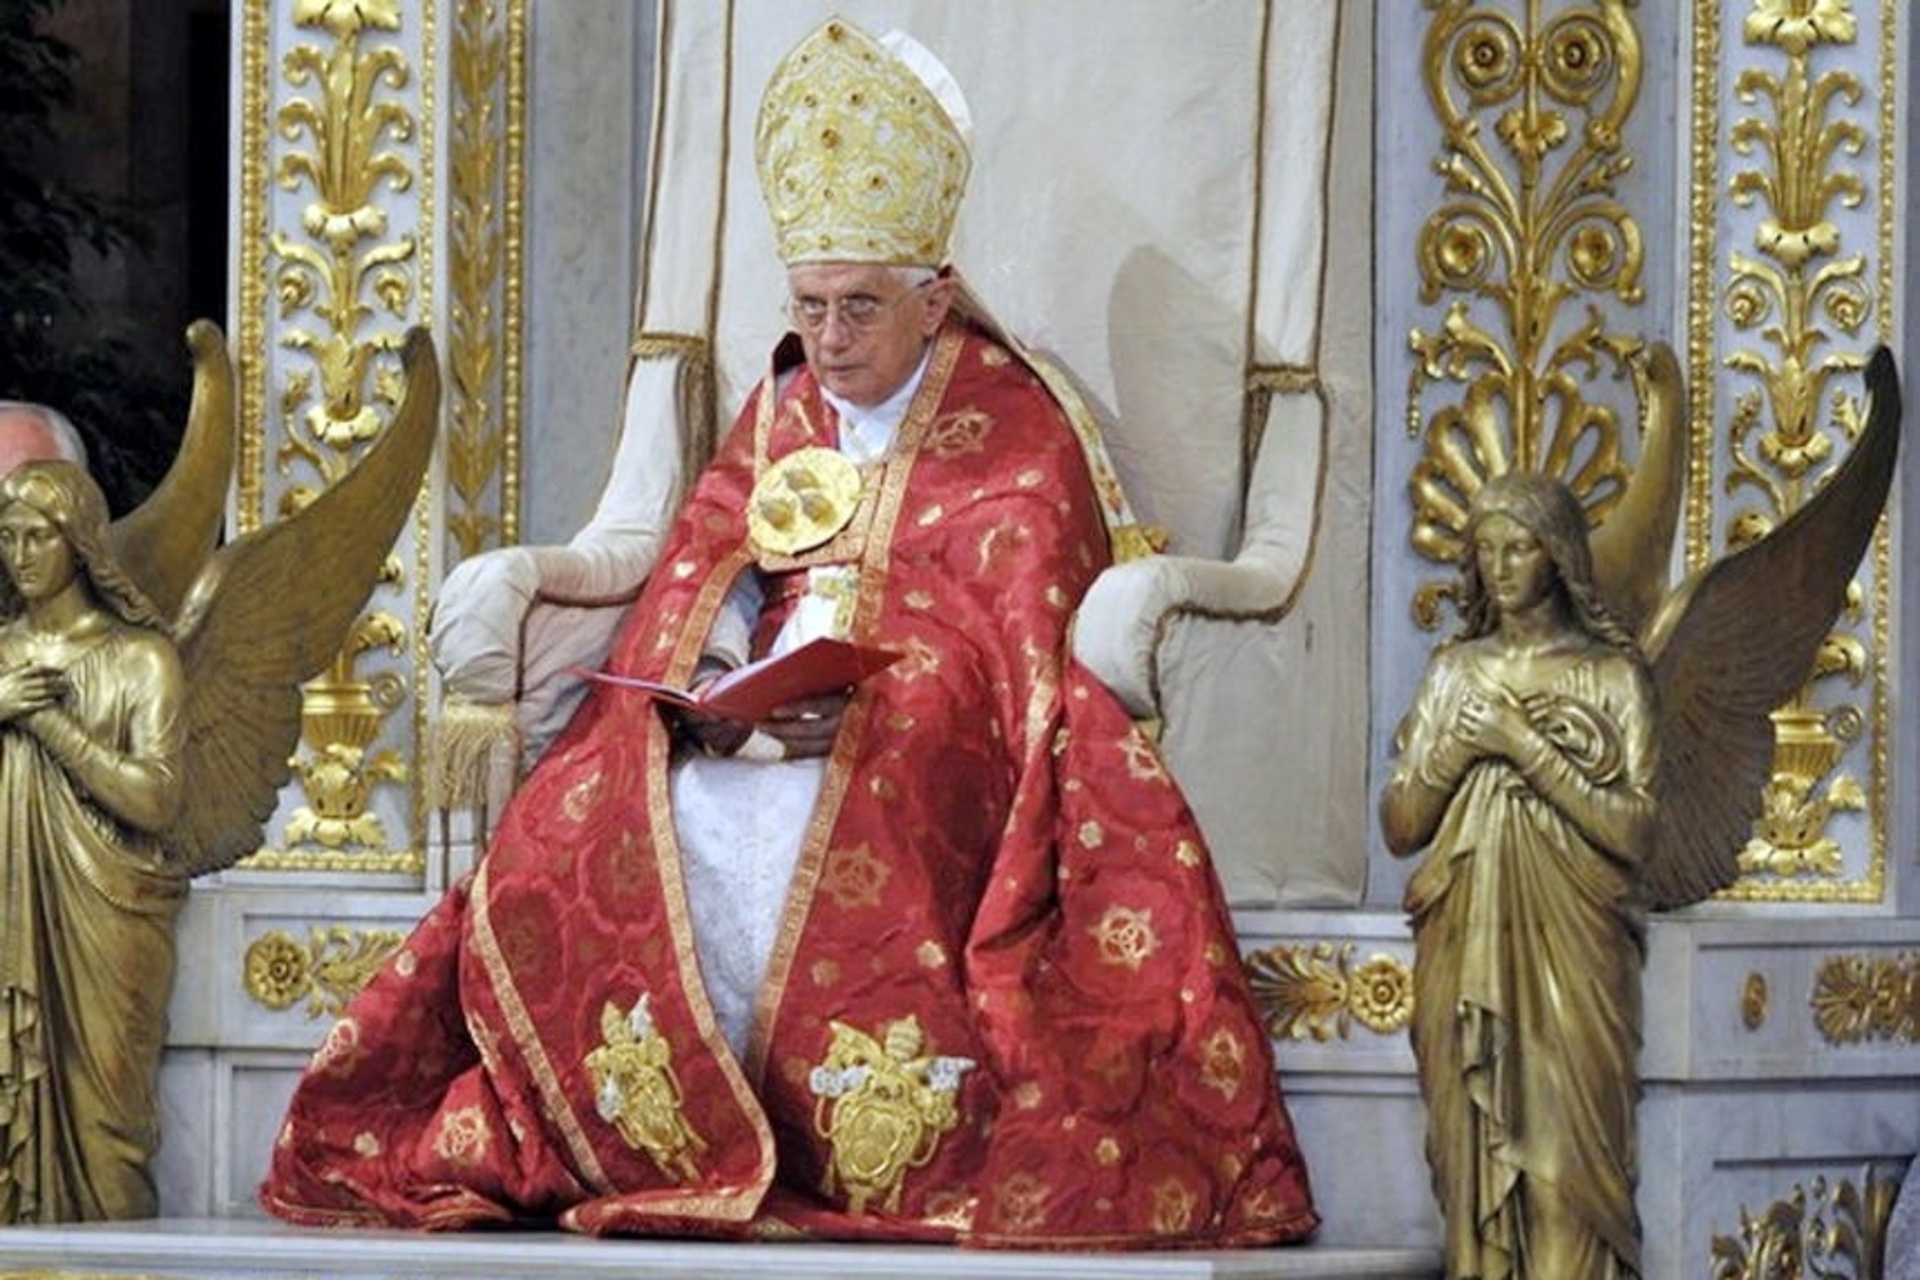 Πάπας Βενέδικτος XVI: Ο Βενέδικτος XVI, γεννημένος Joseph Ratzinger, 265ος Πάπας της Καθολικής Εκκλησίας και Επίσκοπος της Ρώμης, προήδρευσε στην τελετή έναρξης του Έτους των Παύλων στις 29 Ιουνίου 2008